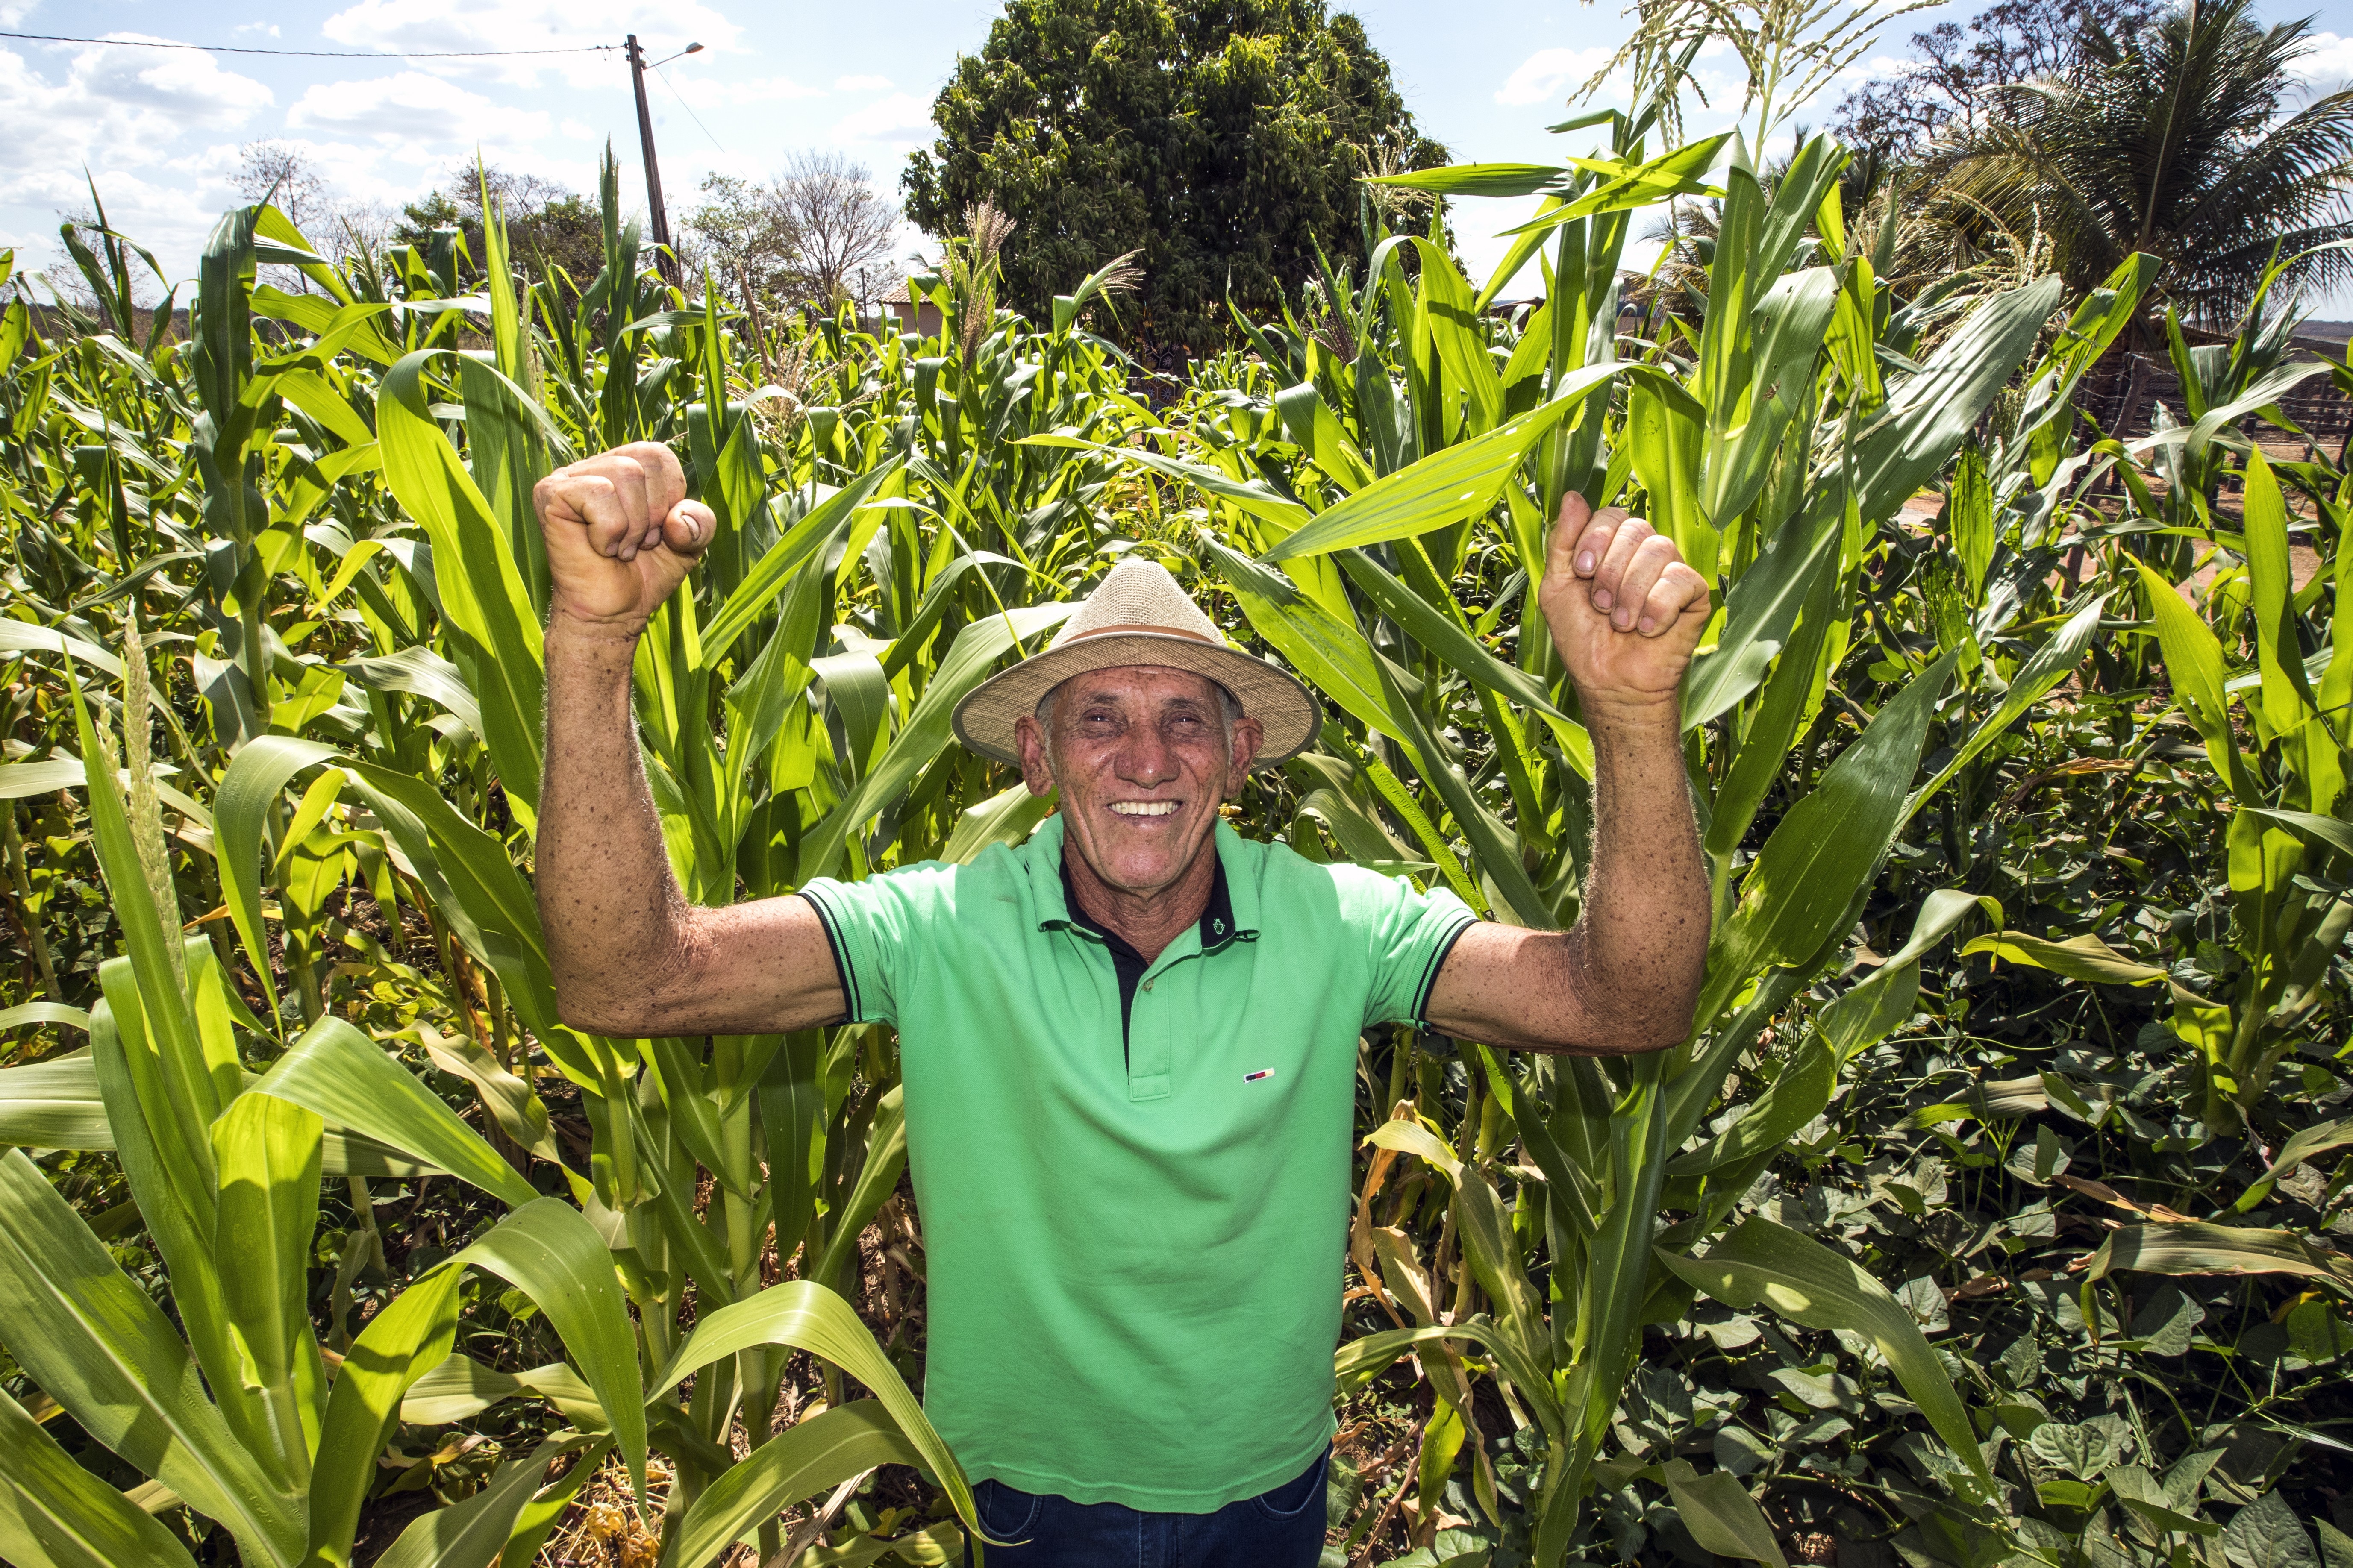 Cipriano Teixeira dos Santos, de 67 anos, comemora o aumento da produtividade após quase desistir de plantar nas terras que herdou de seu pai em Barreiras, no oeste da Bahia (Foto: Marcio Dantas/divulgação Mosaic Fertilizantes)